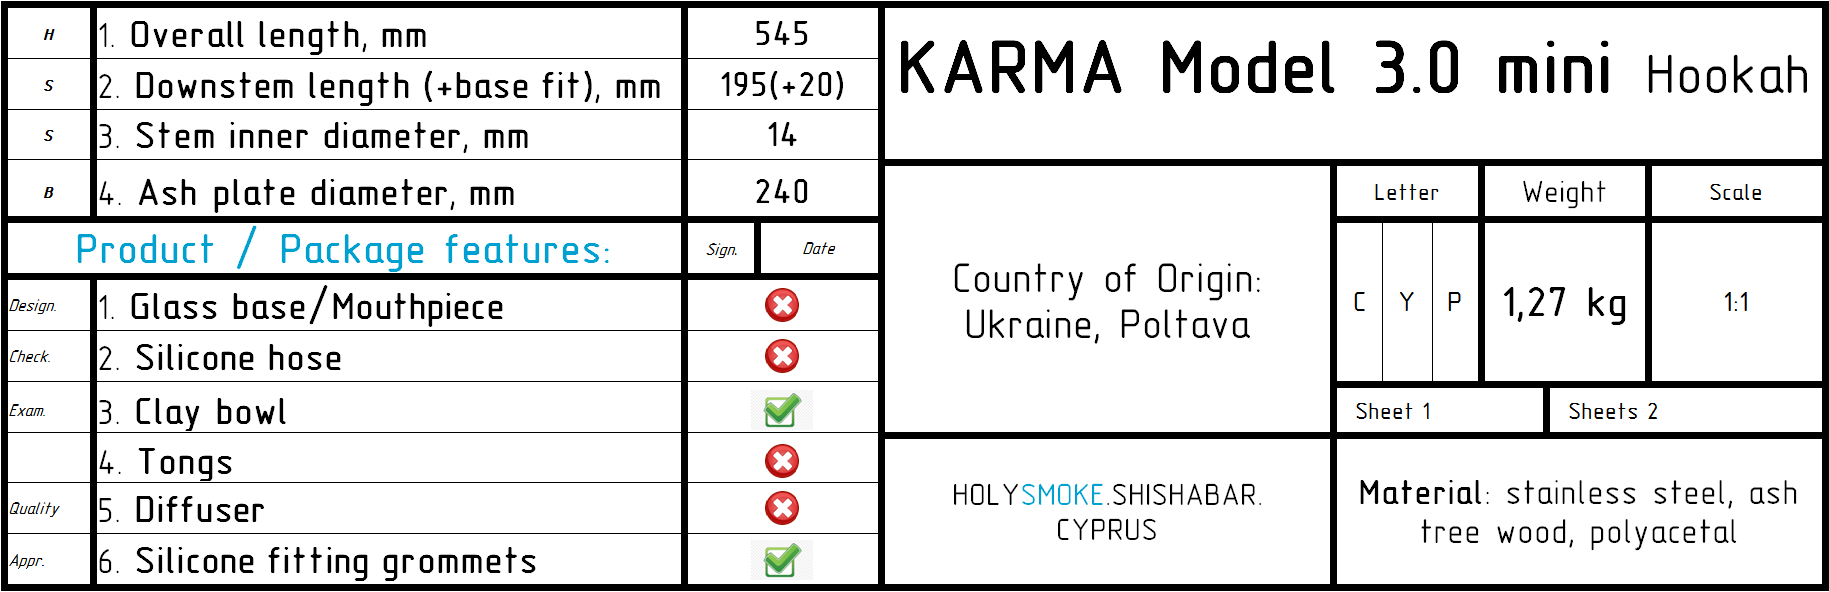 KARMA UA model 3.0 brown hookah - available online